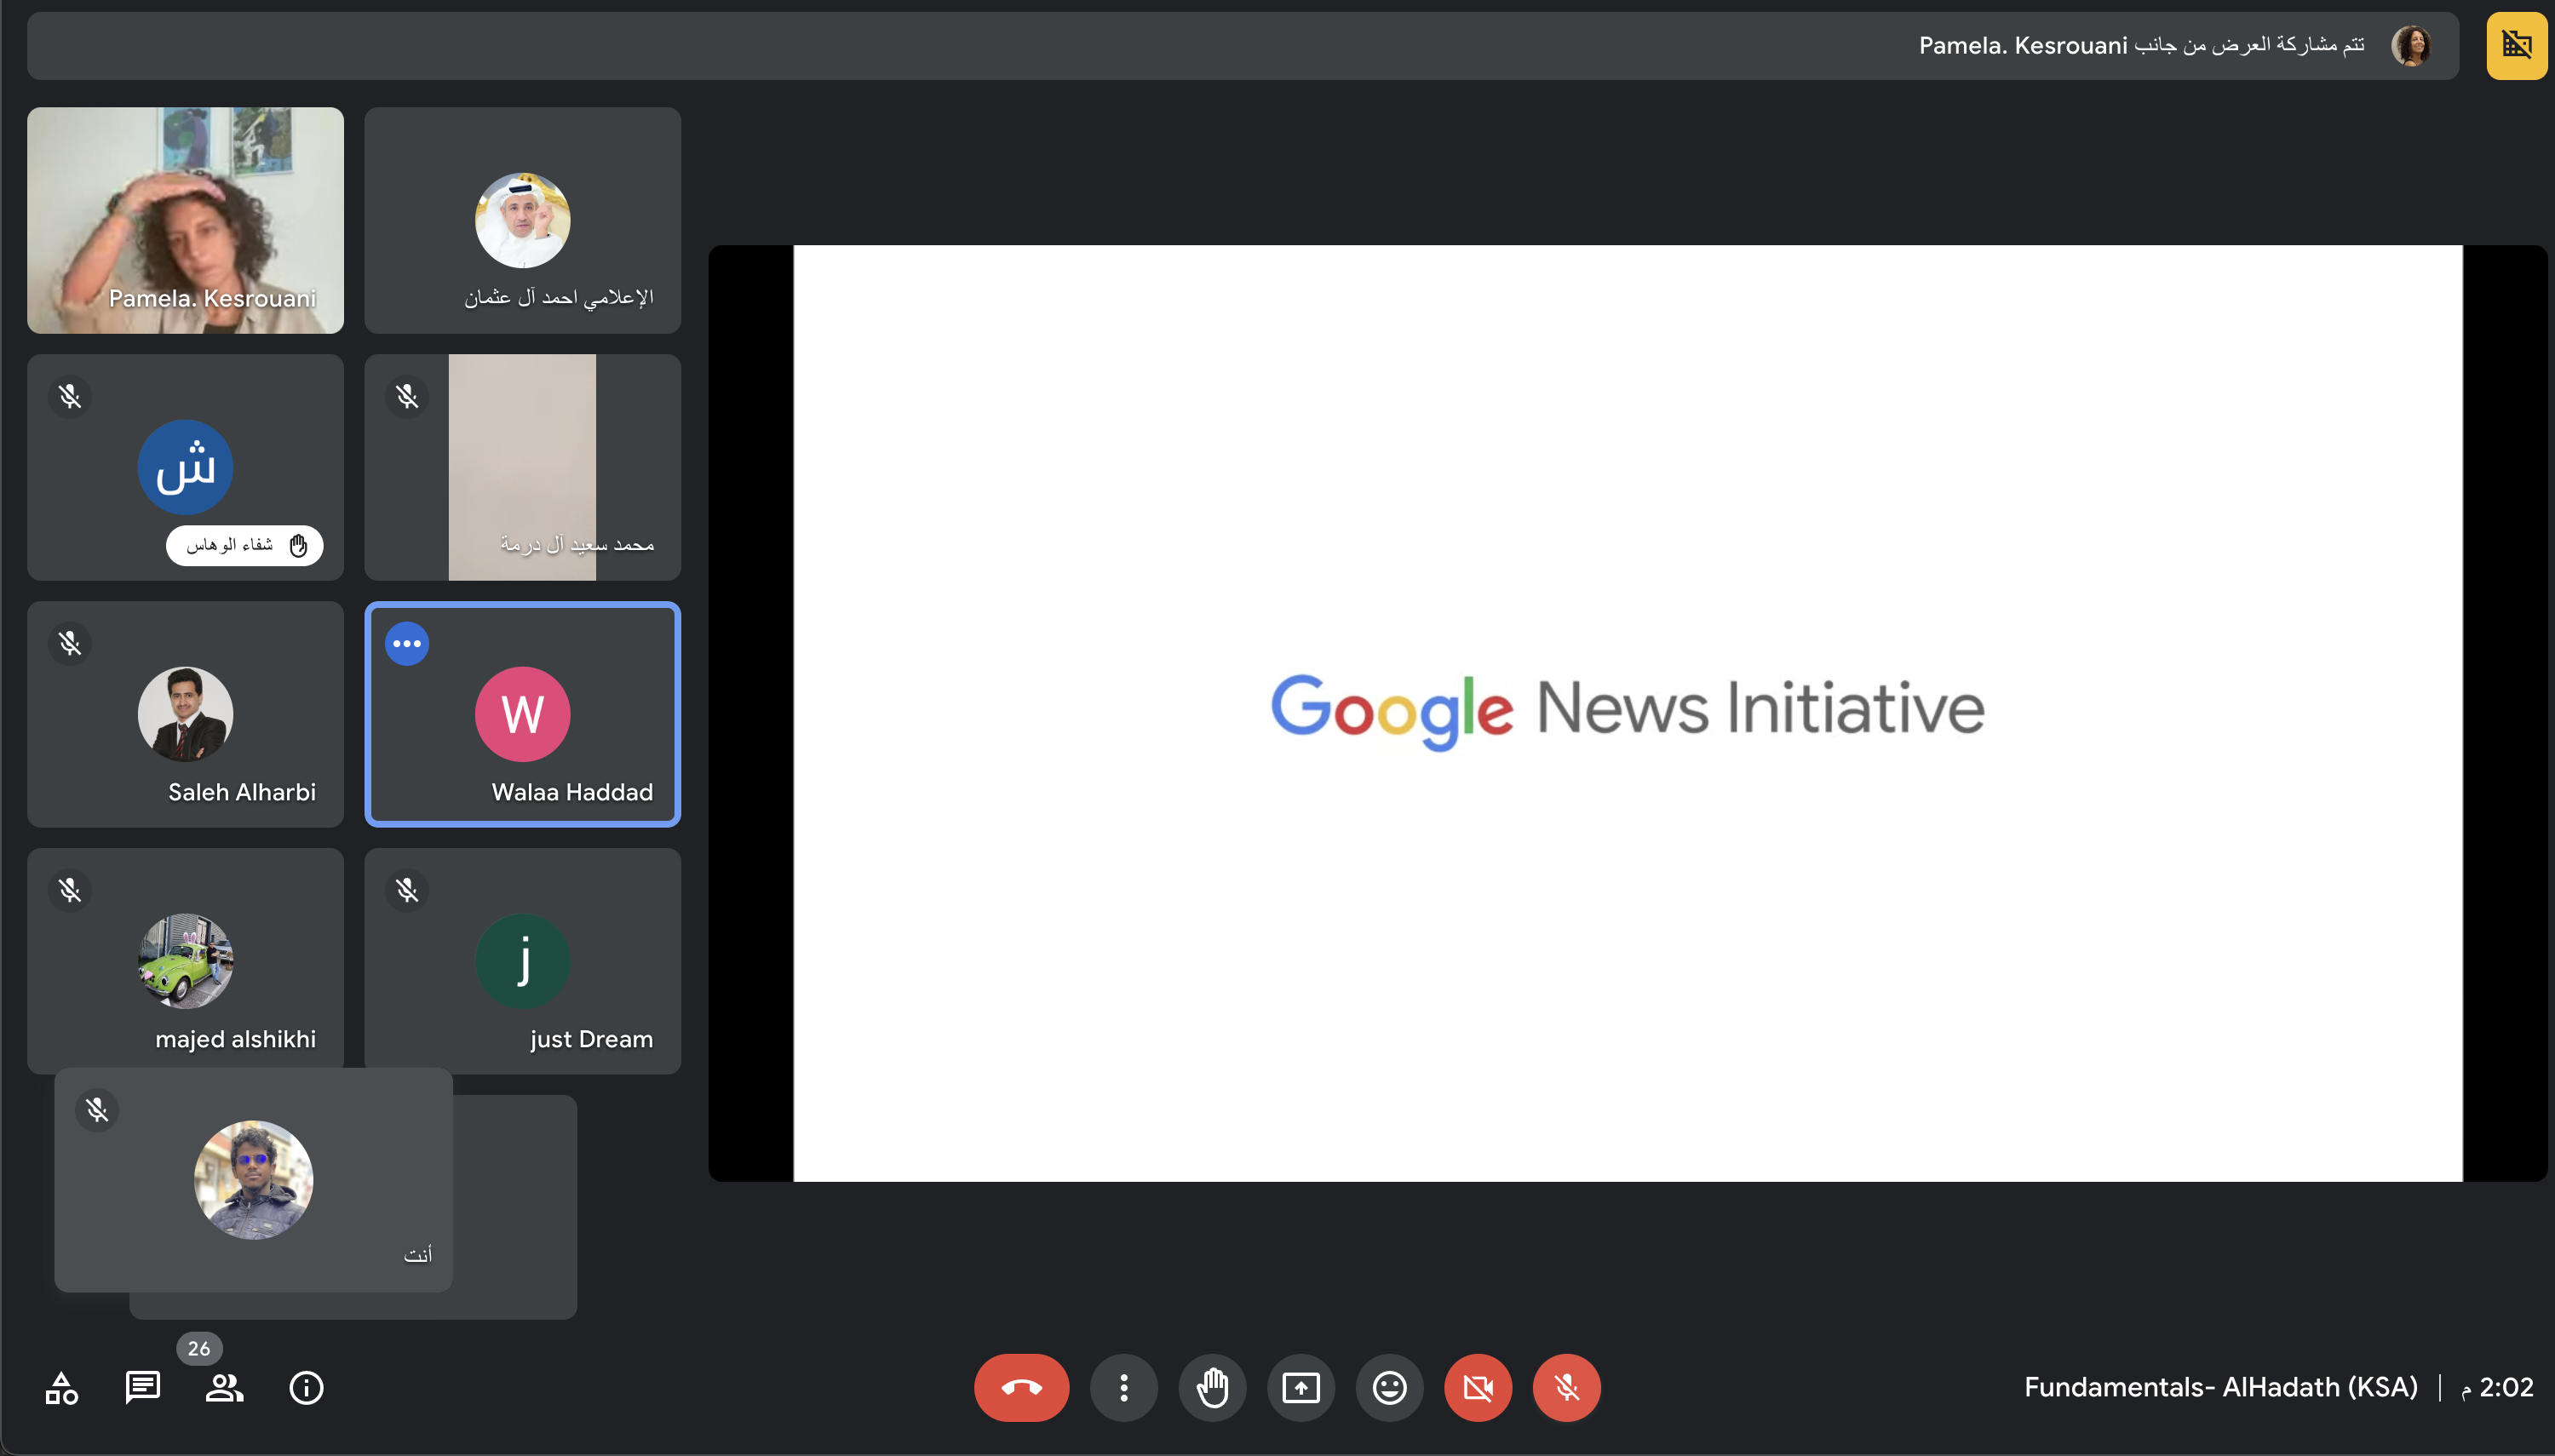 انطلاق الجلسة الأولى لورشة الصحافة الرقمية بالشراكة مع مبادرة أخبار Google وصحيفة الحدث